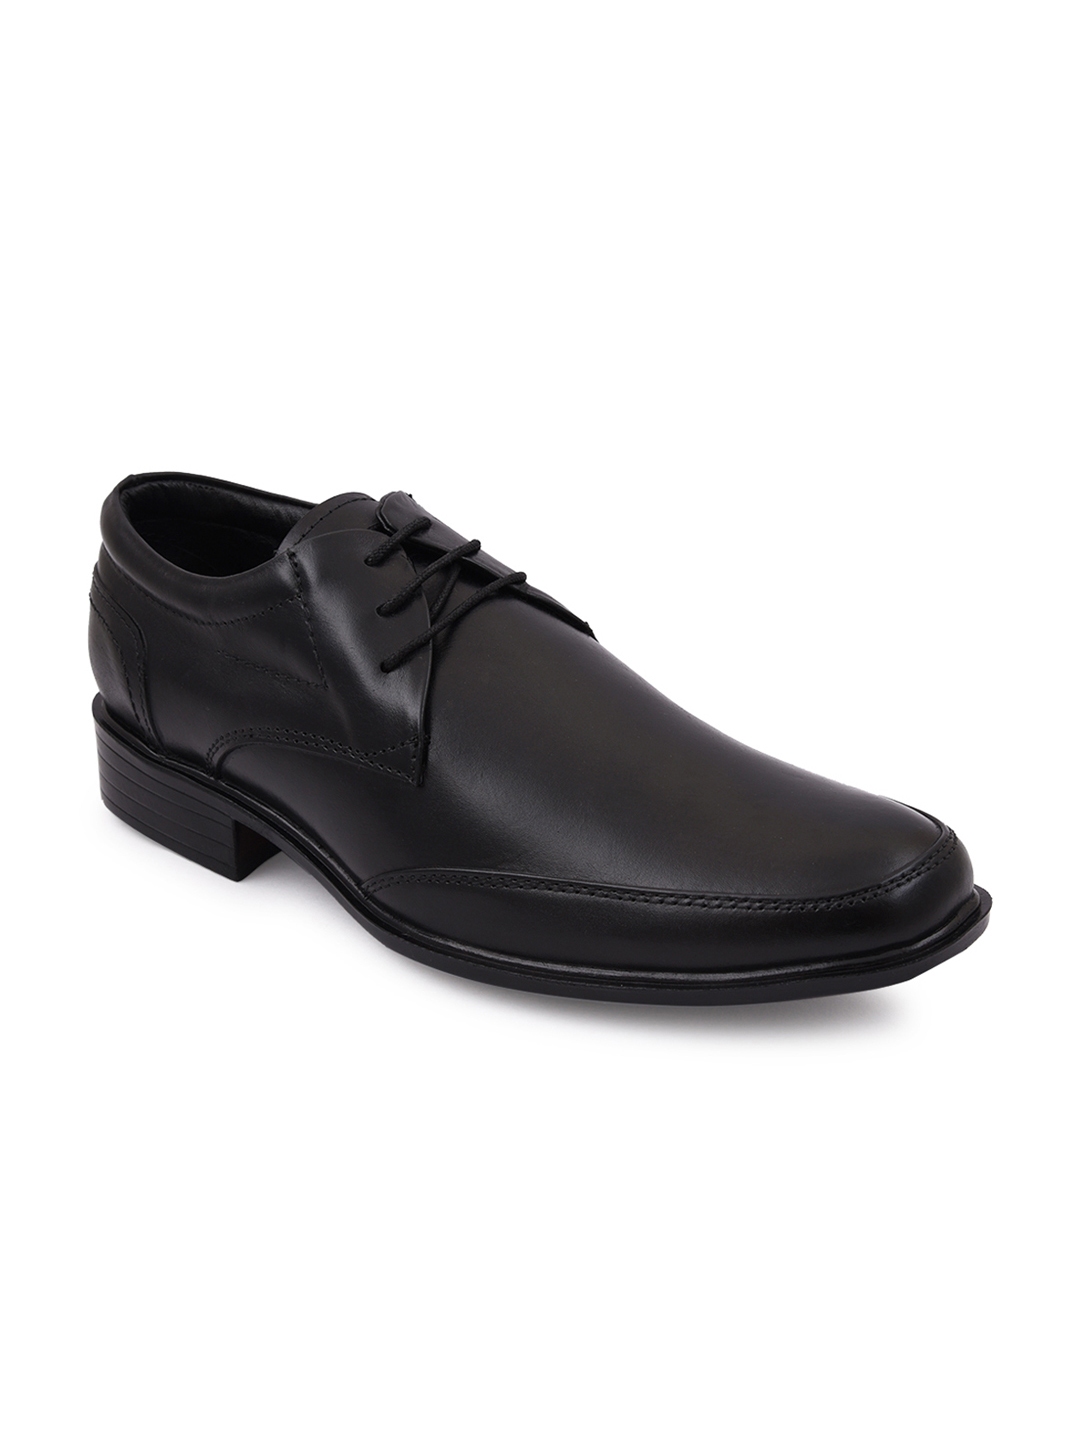 Buy Bacca Bucci Men Black Leather Formal Shoes - Formal Shoes for Men ...